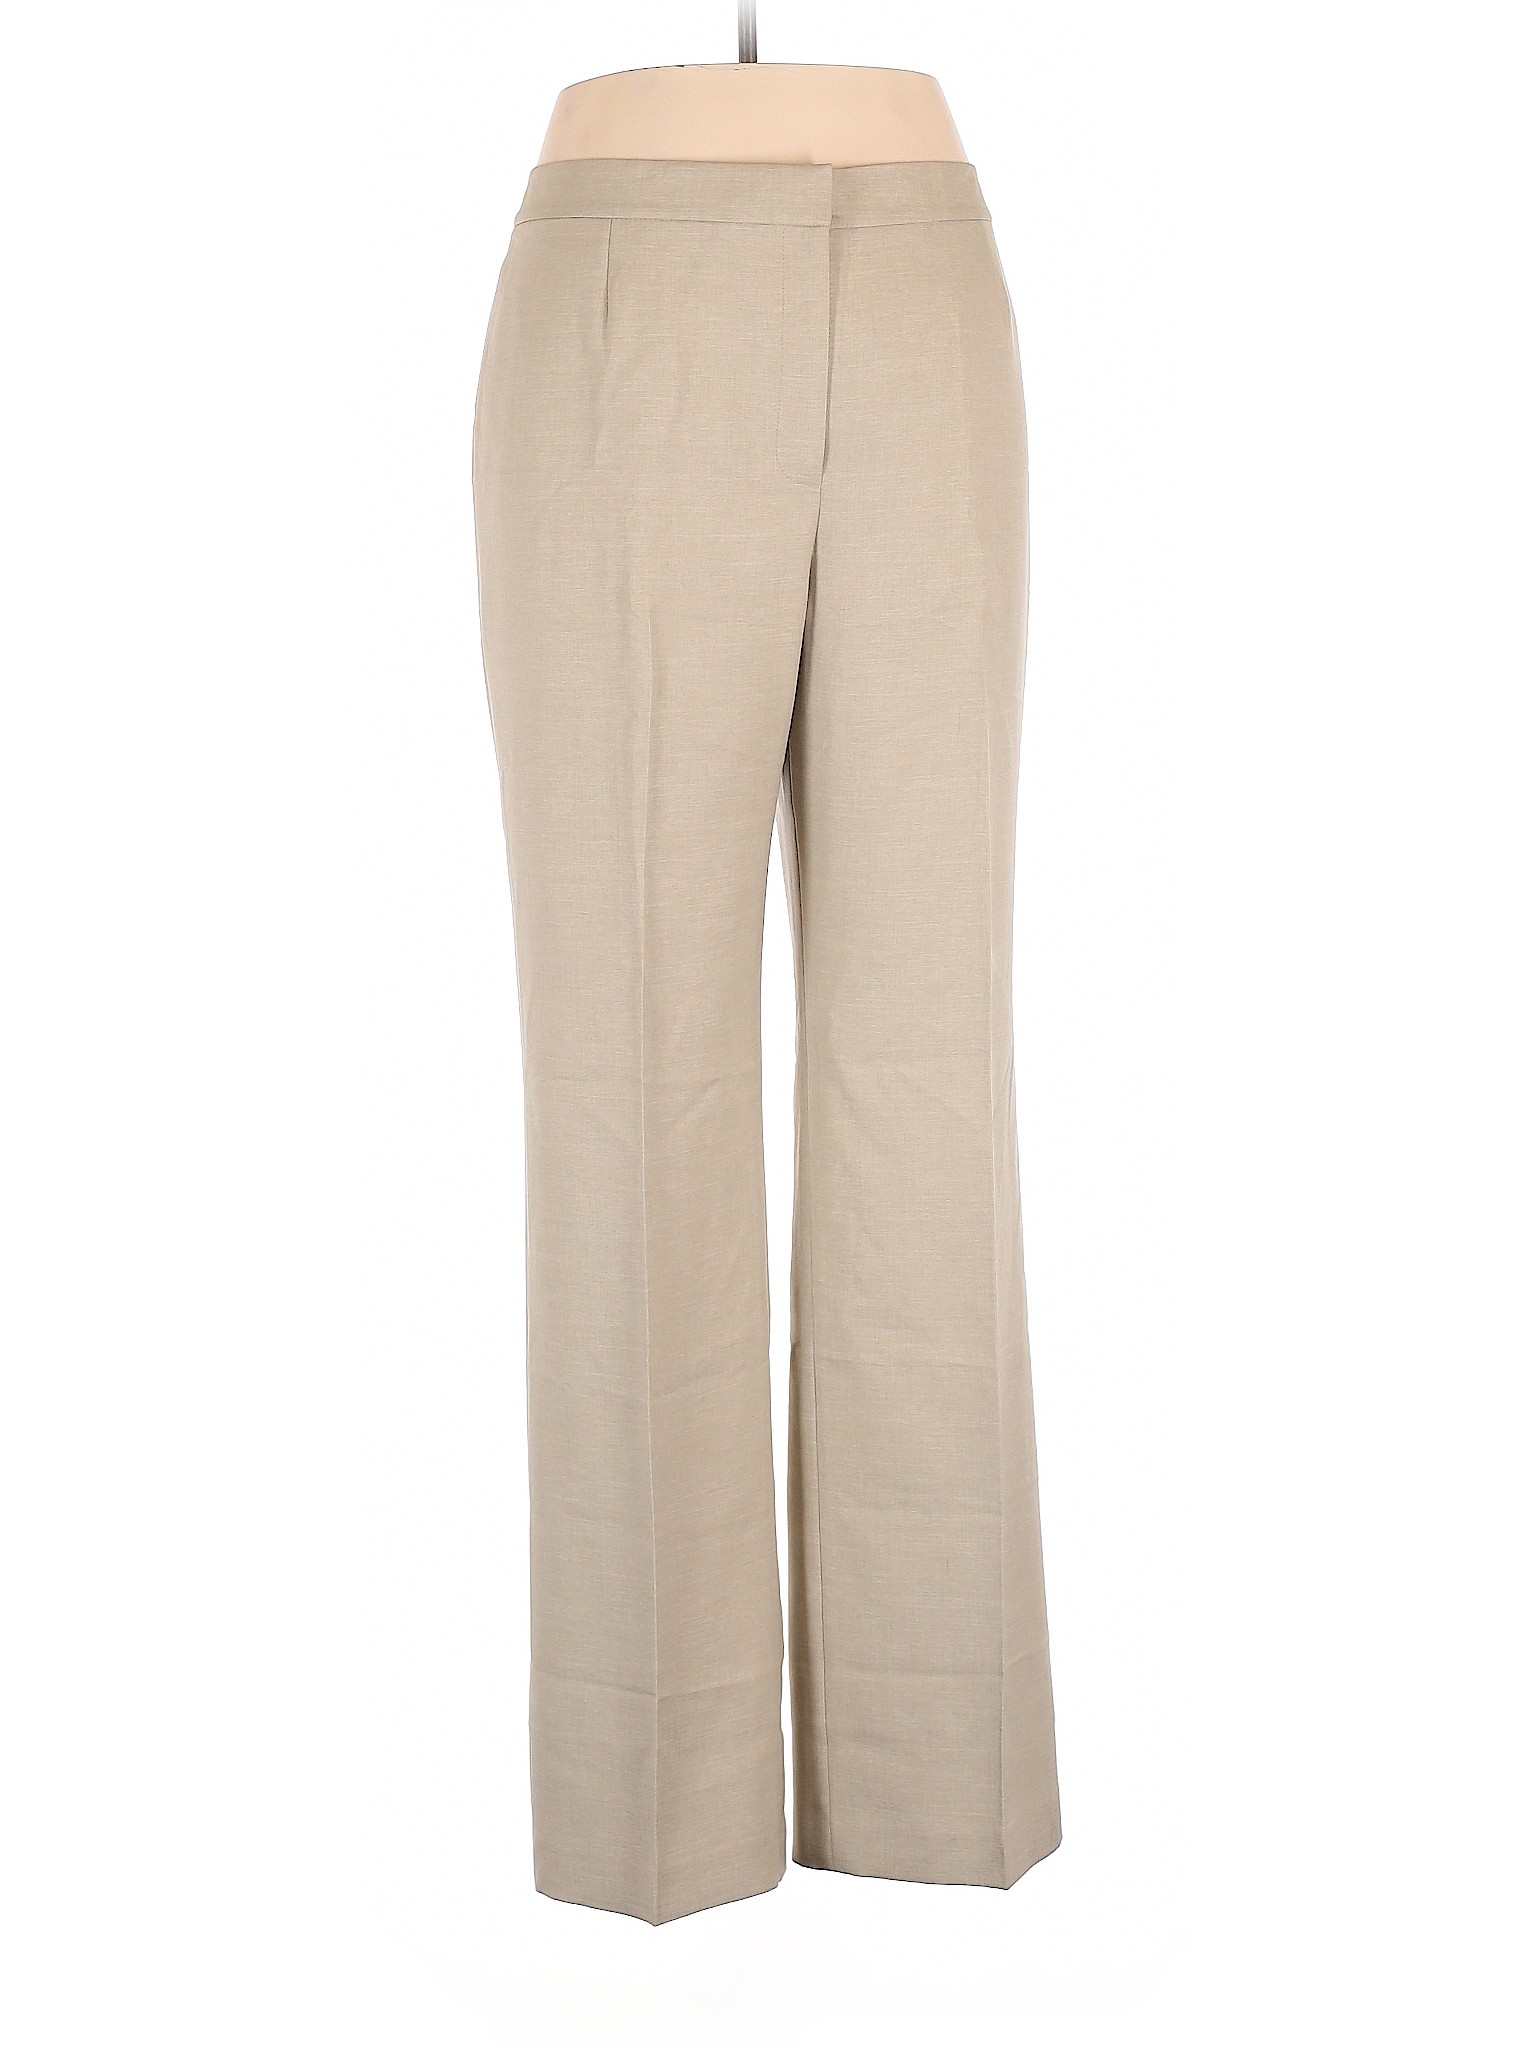 Jones Studio Women Brown Dress Pants 14 | eBay